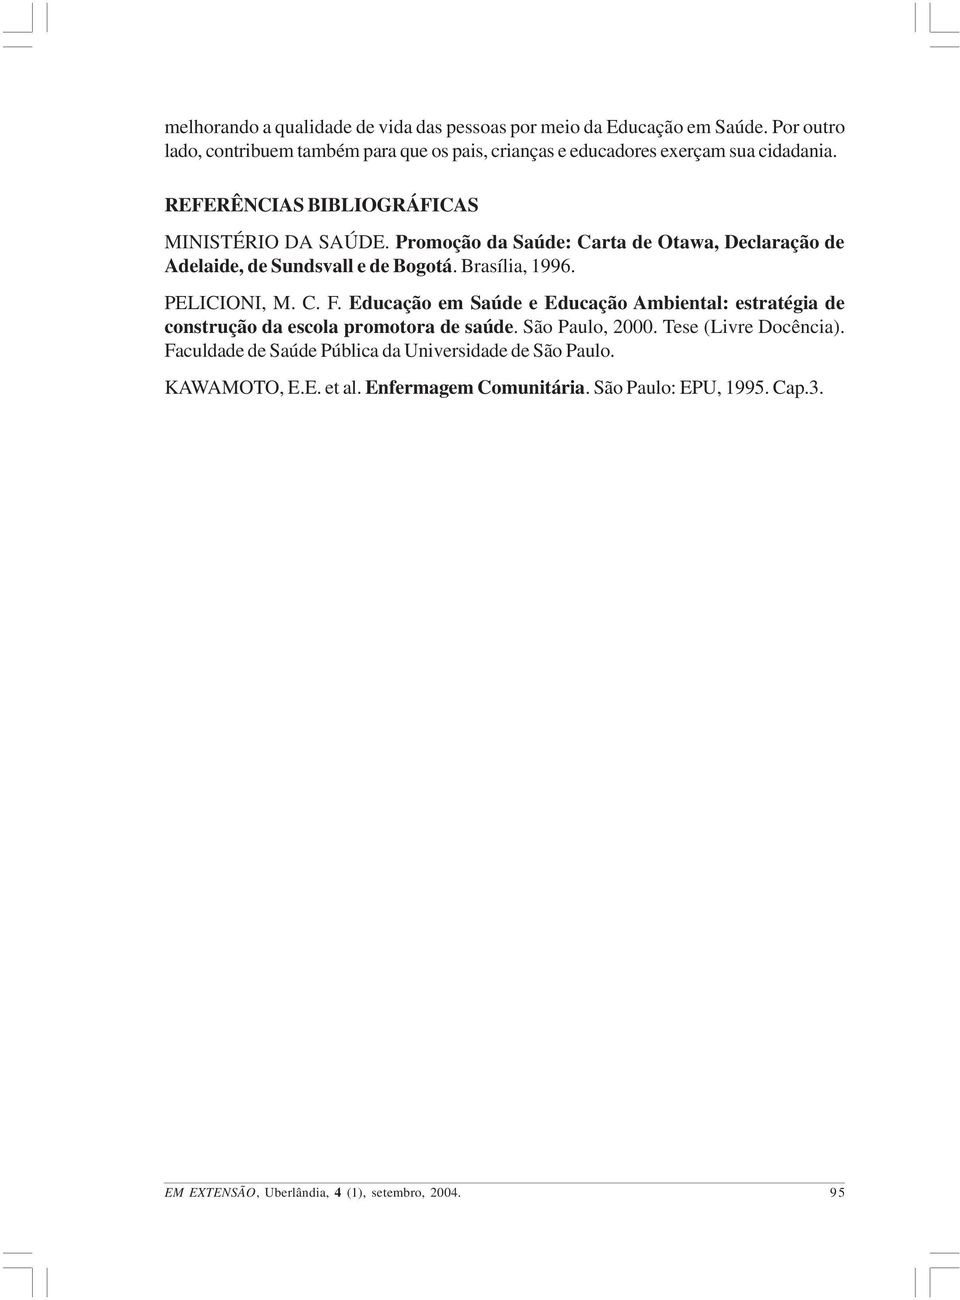 Promoção da Saúde: Carta de Otawa, Declaração de Adelaide, de Sundsvall e de Bogotá. Brasília, 1996. PELICIONI, M. C. F.